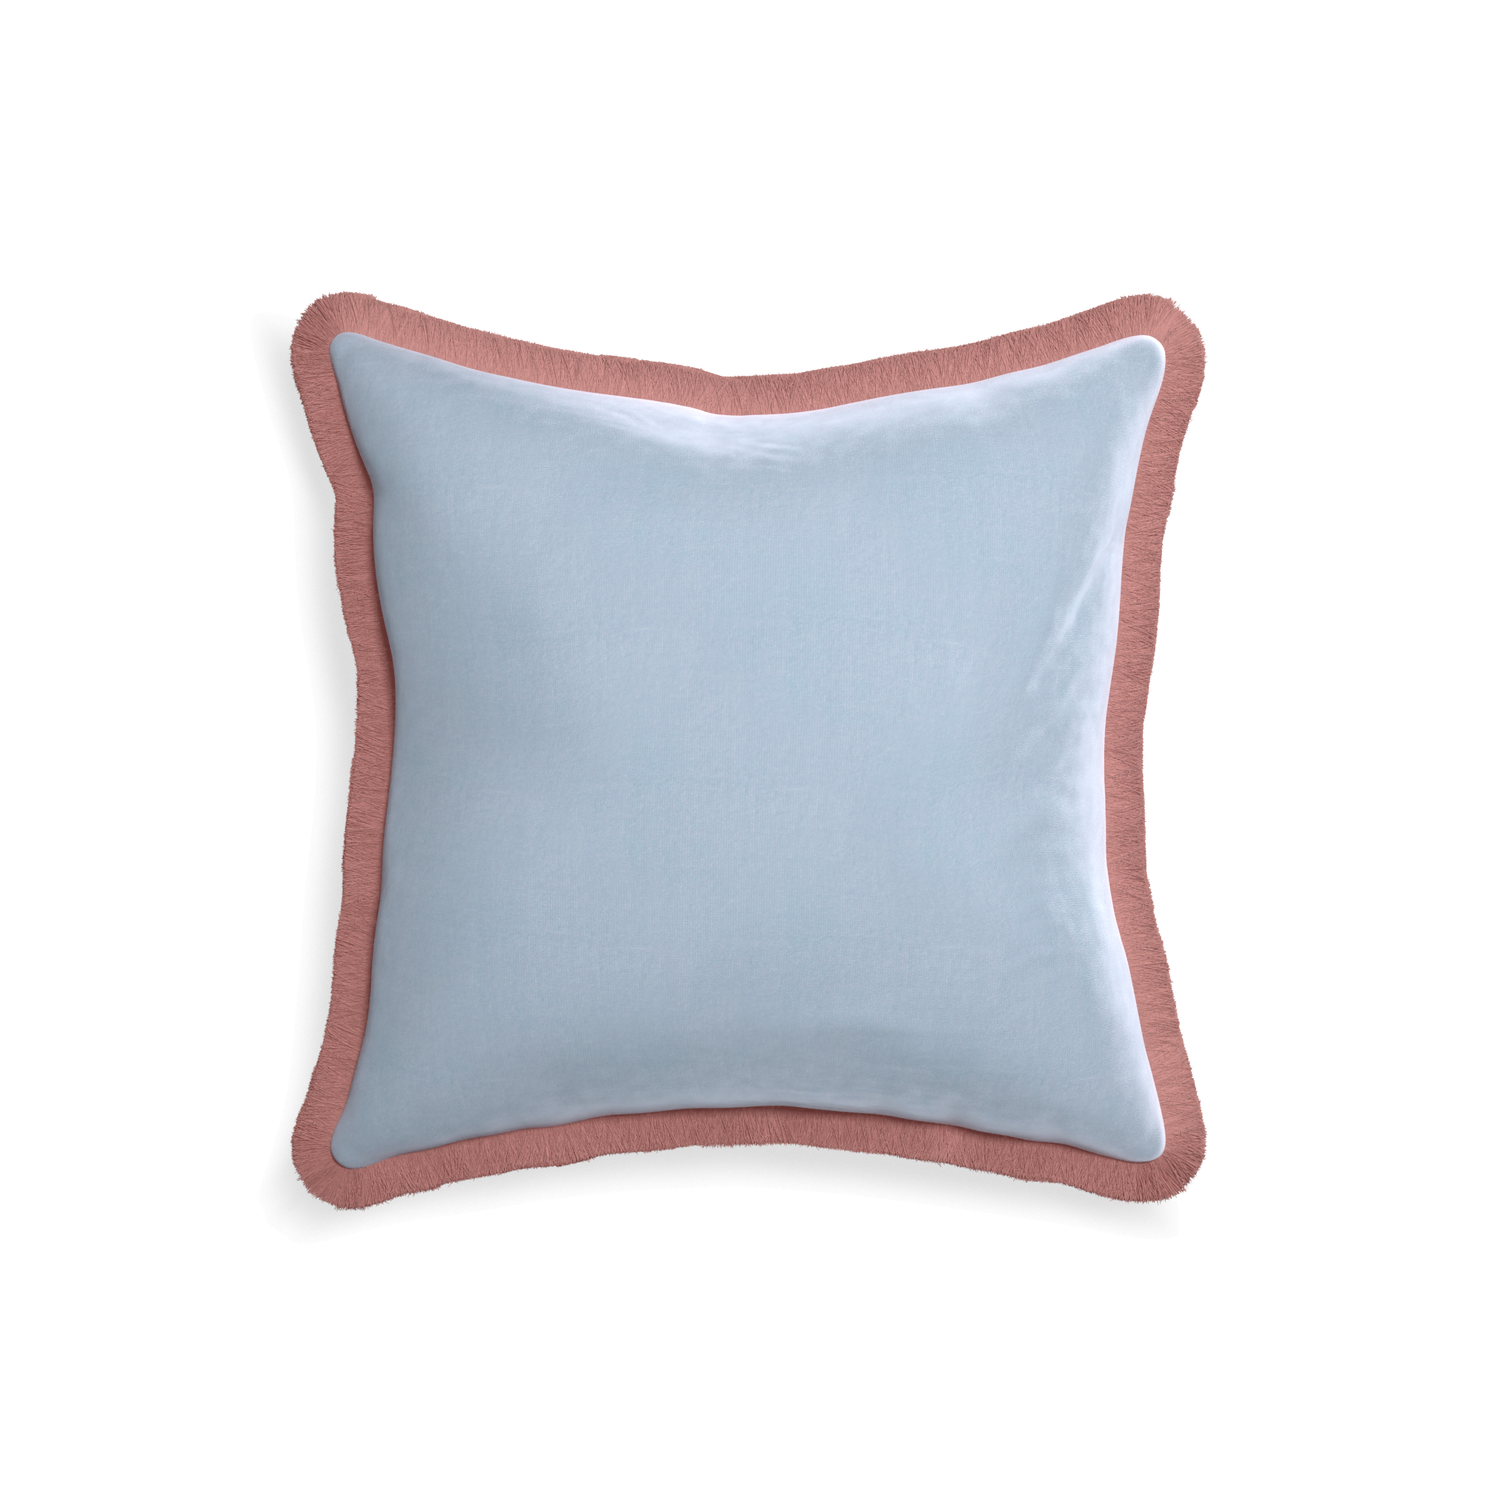 18-square sky velvet custom pillow with d fringe on white background